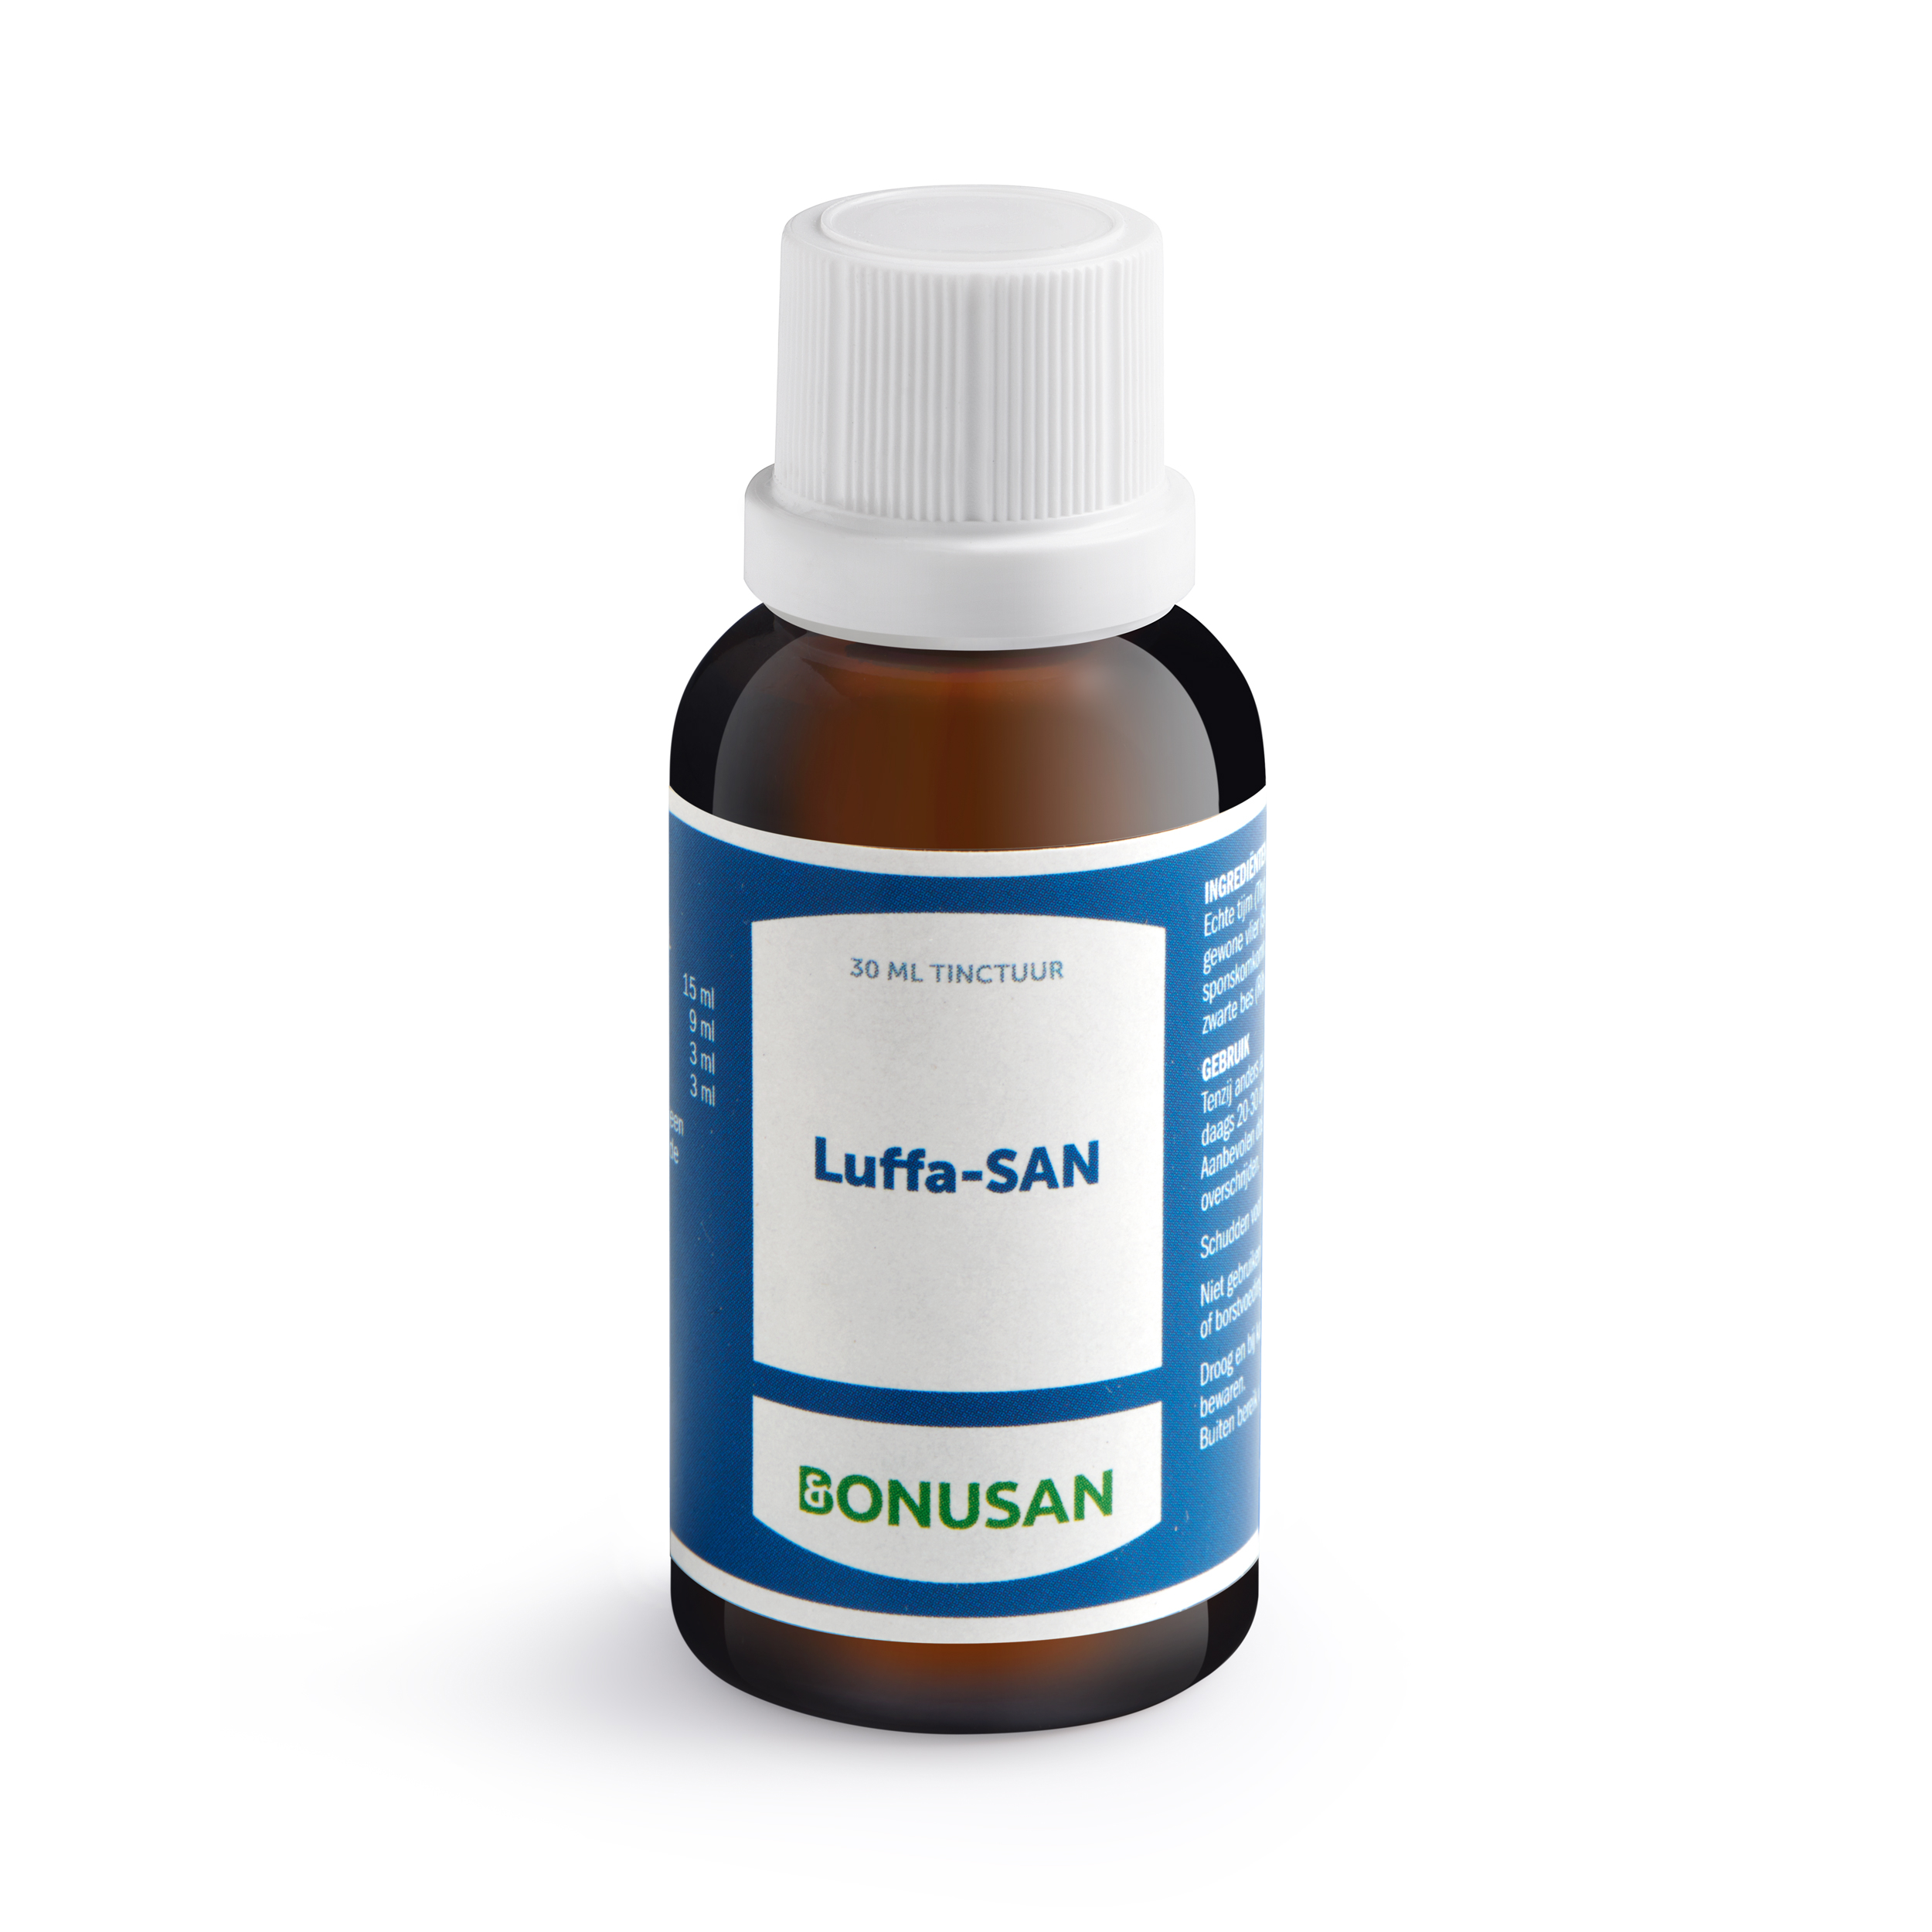 Luffa-SAN - 30 ml